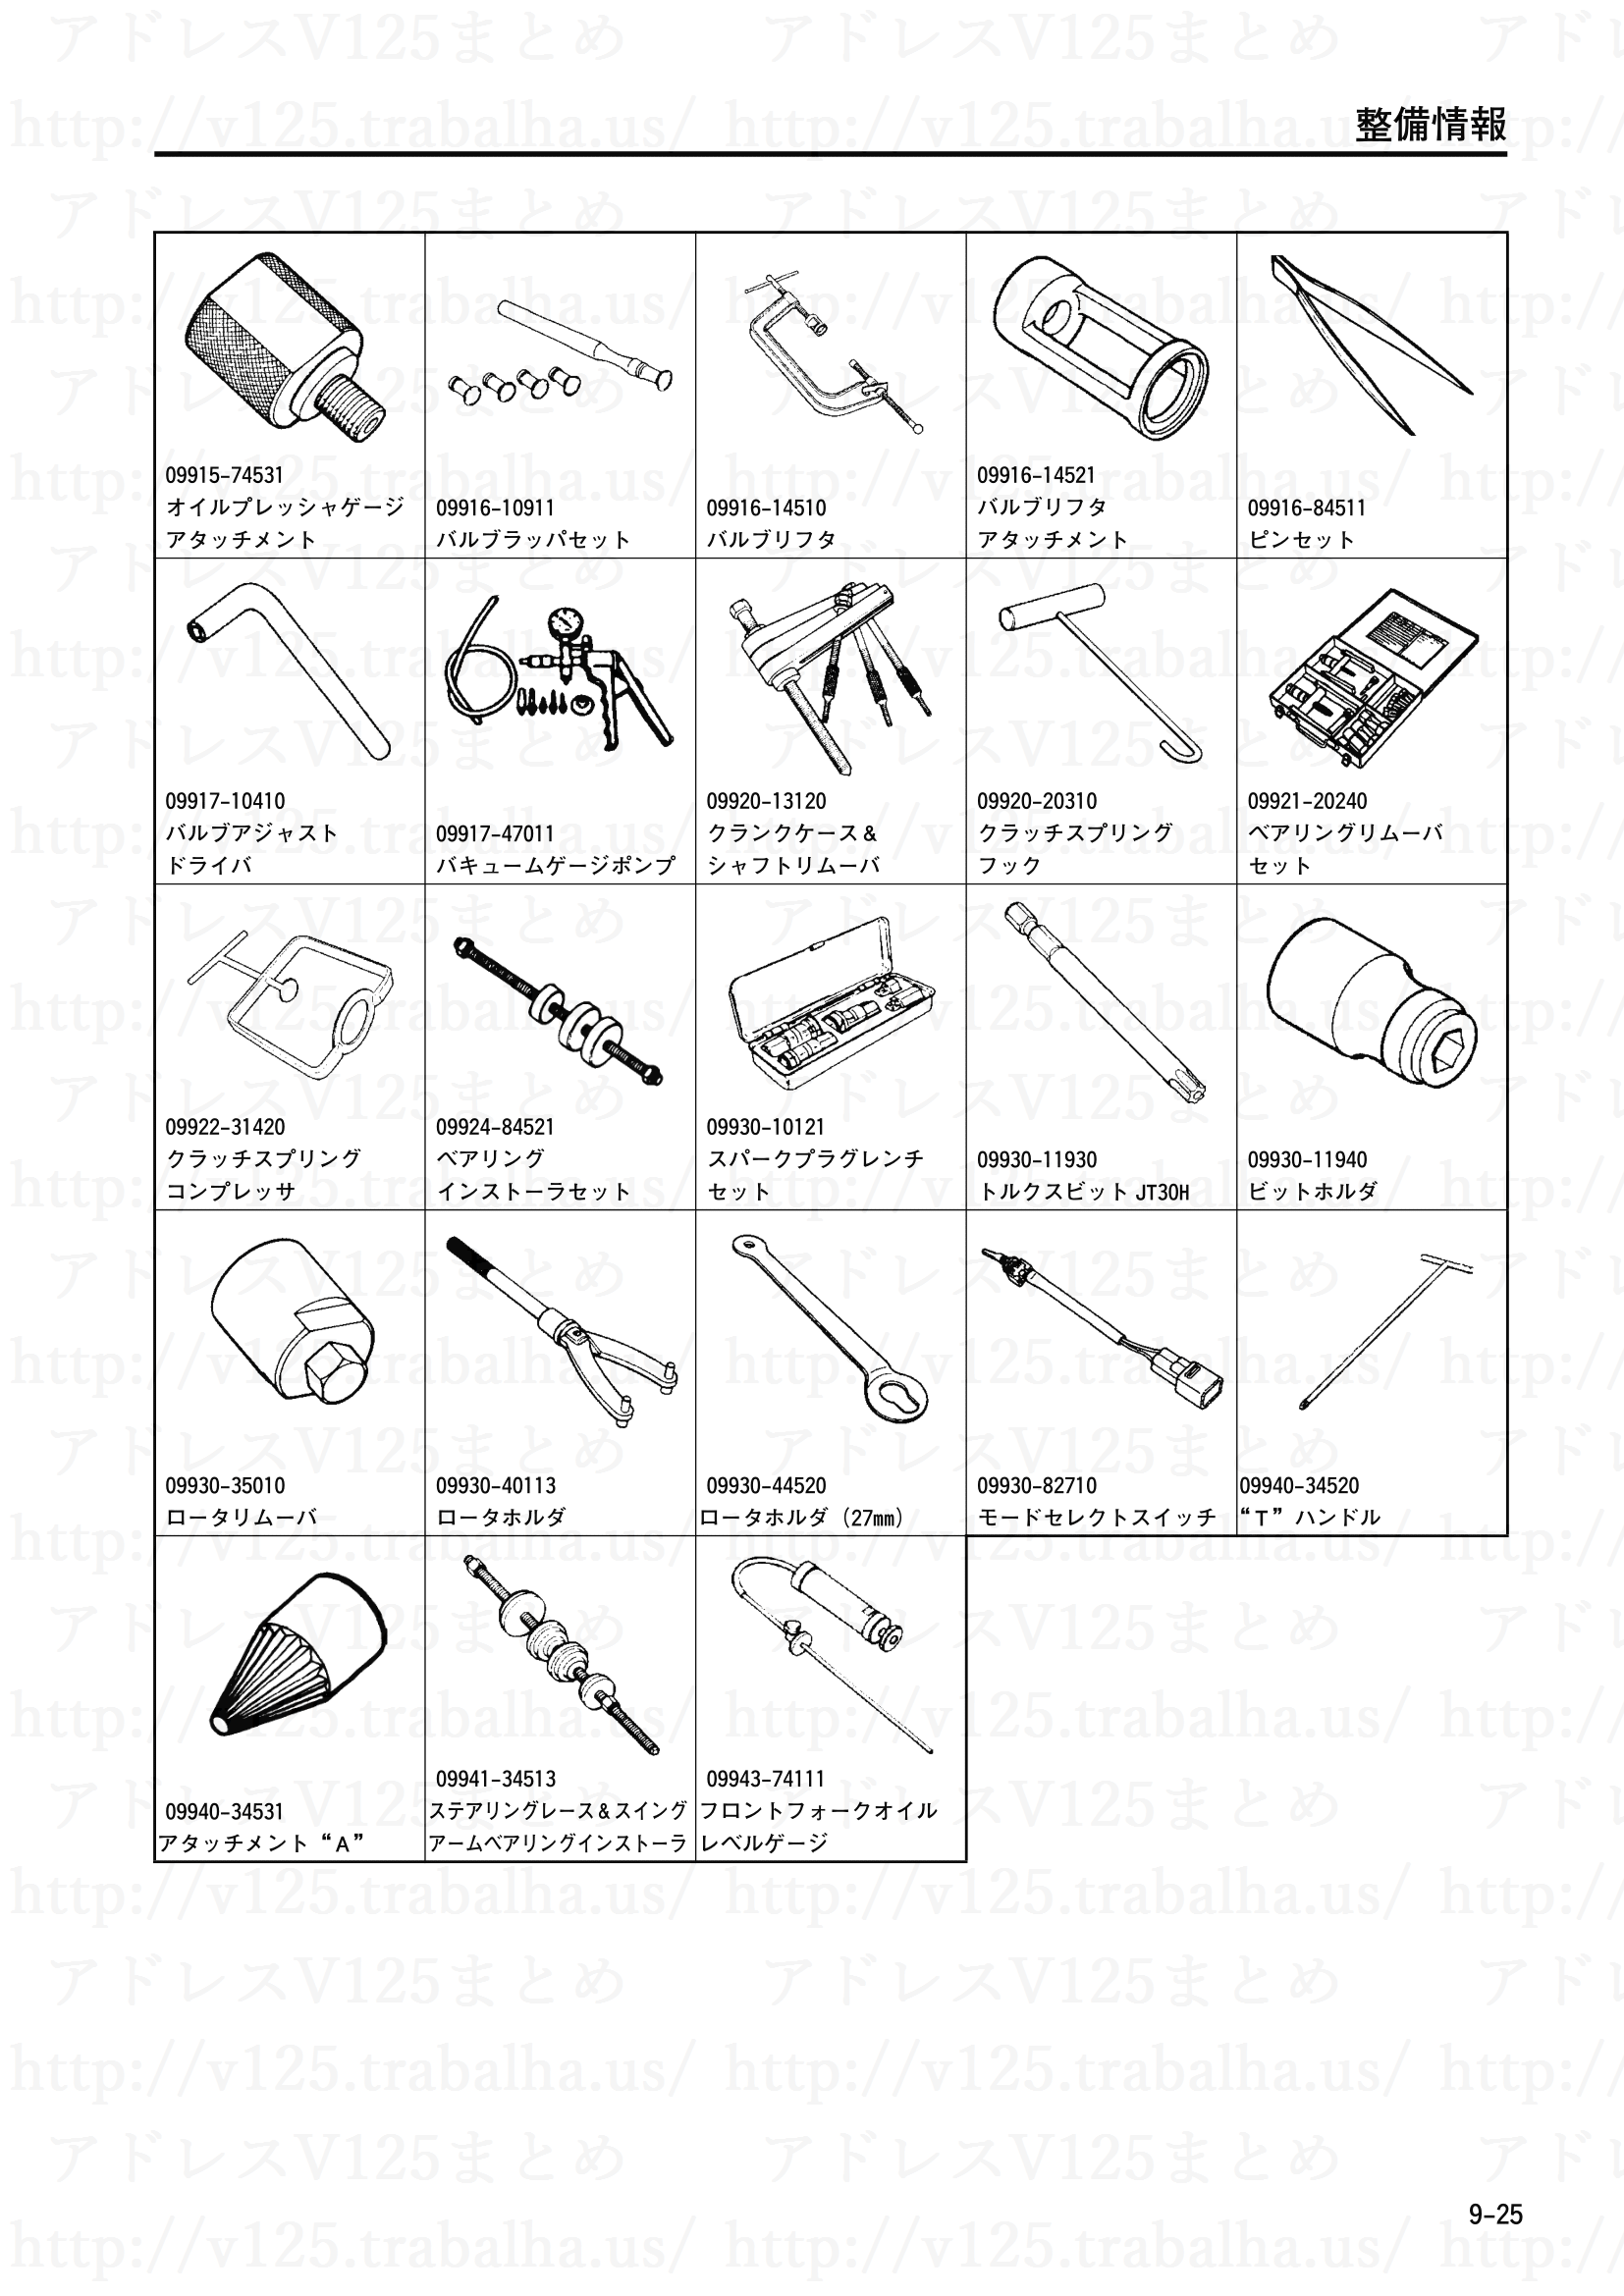 9-25【整備情報】特殊工具2